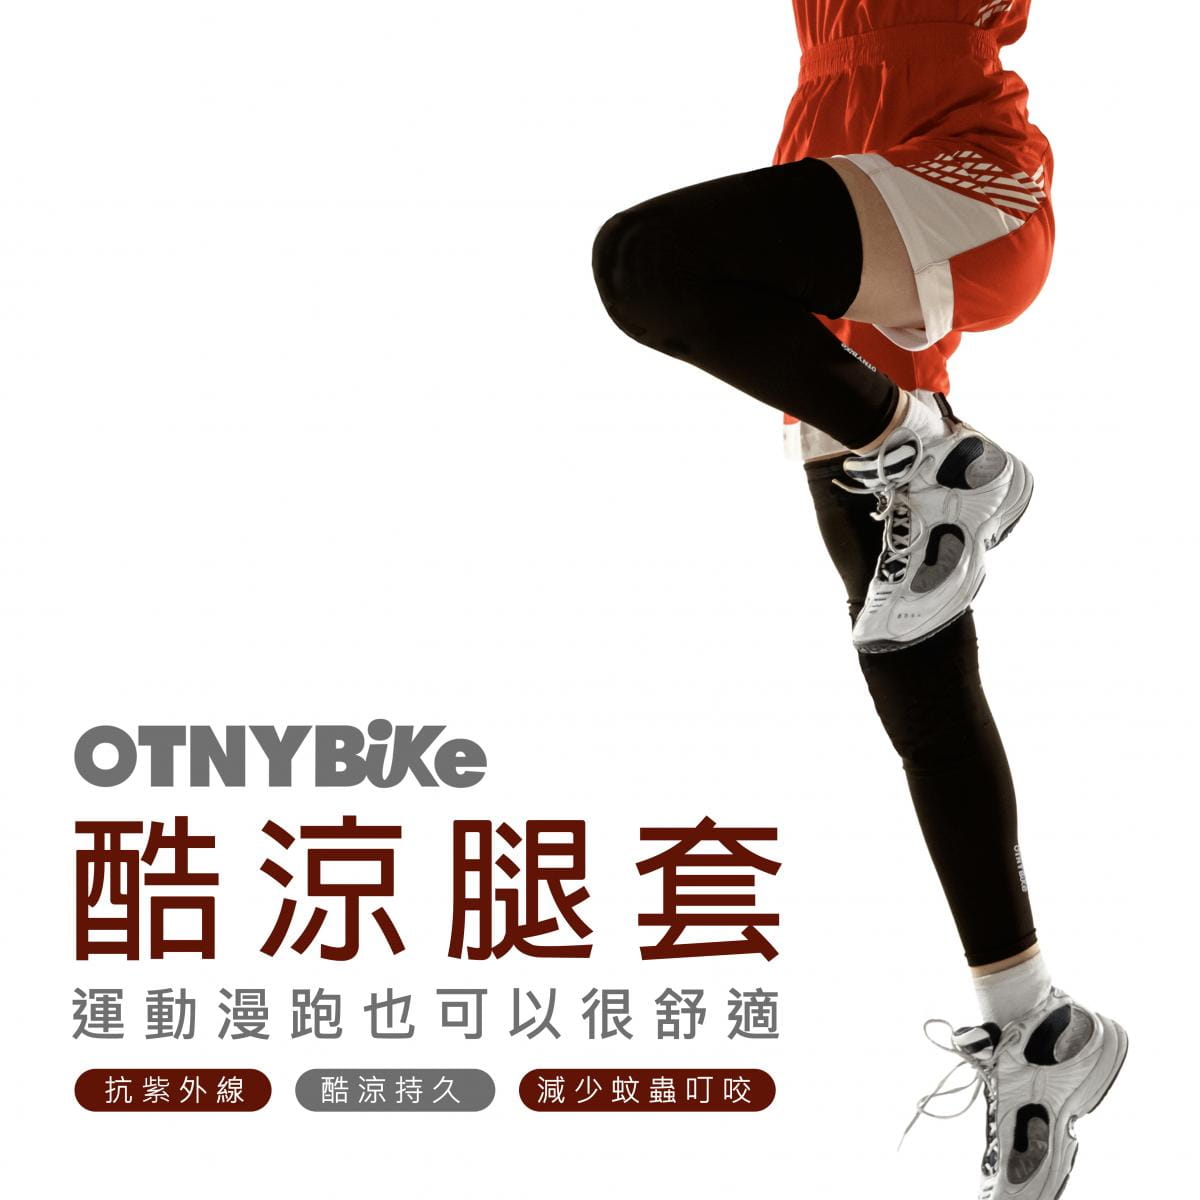 【OTNYBike】ONTYBike 抗UV酷涼腿套 0